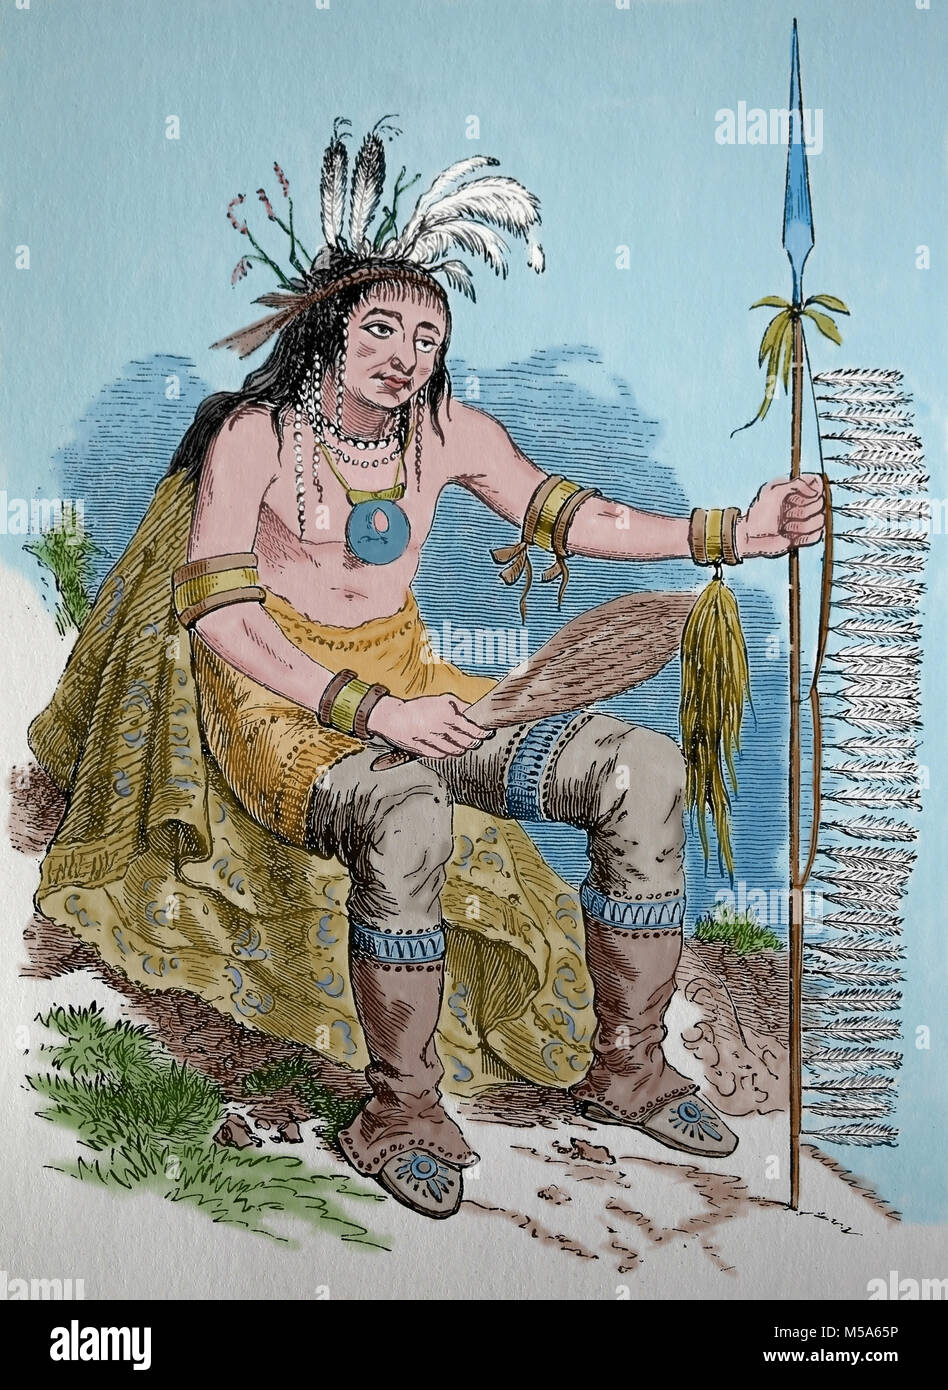 L'Amérique du Nord. Les peuples autochtones. L'Ojibwe ou chippeway Native American, gravure, 1880. Banque D'Images